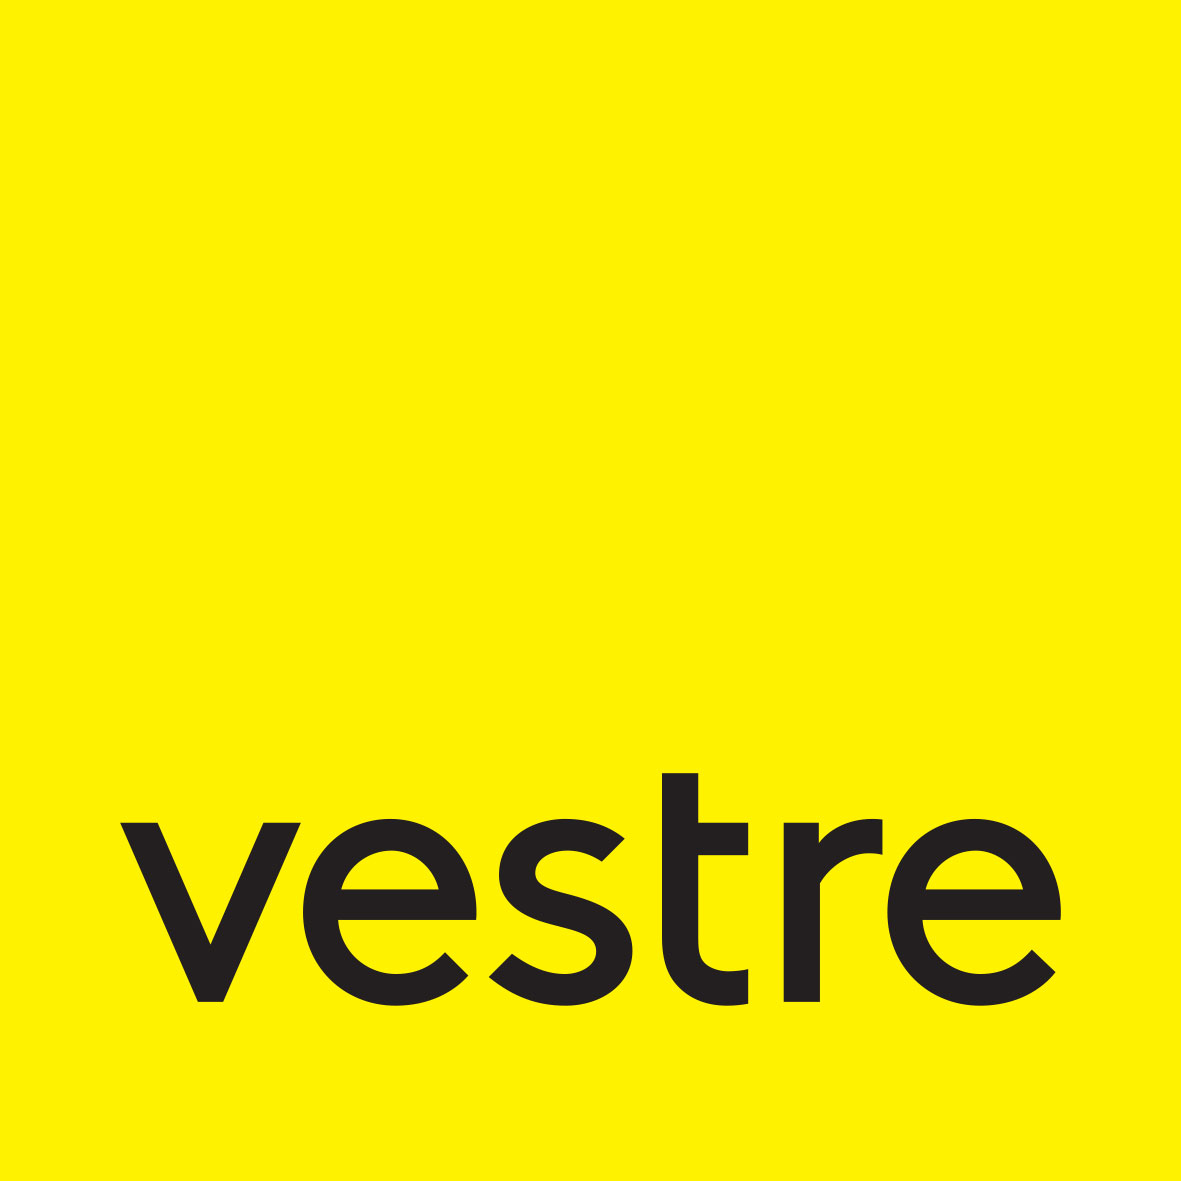 Vestre logo i gul og sort